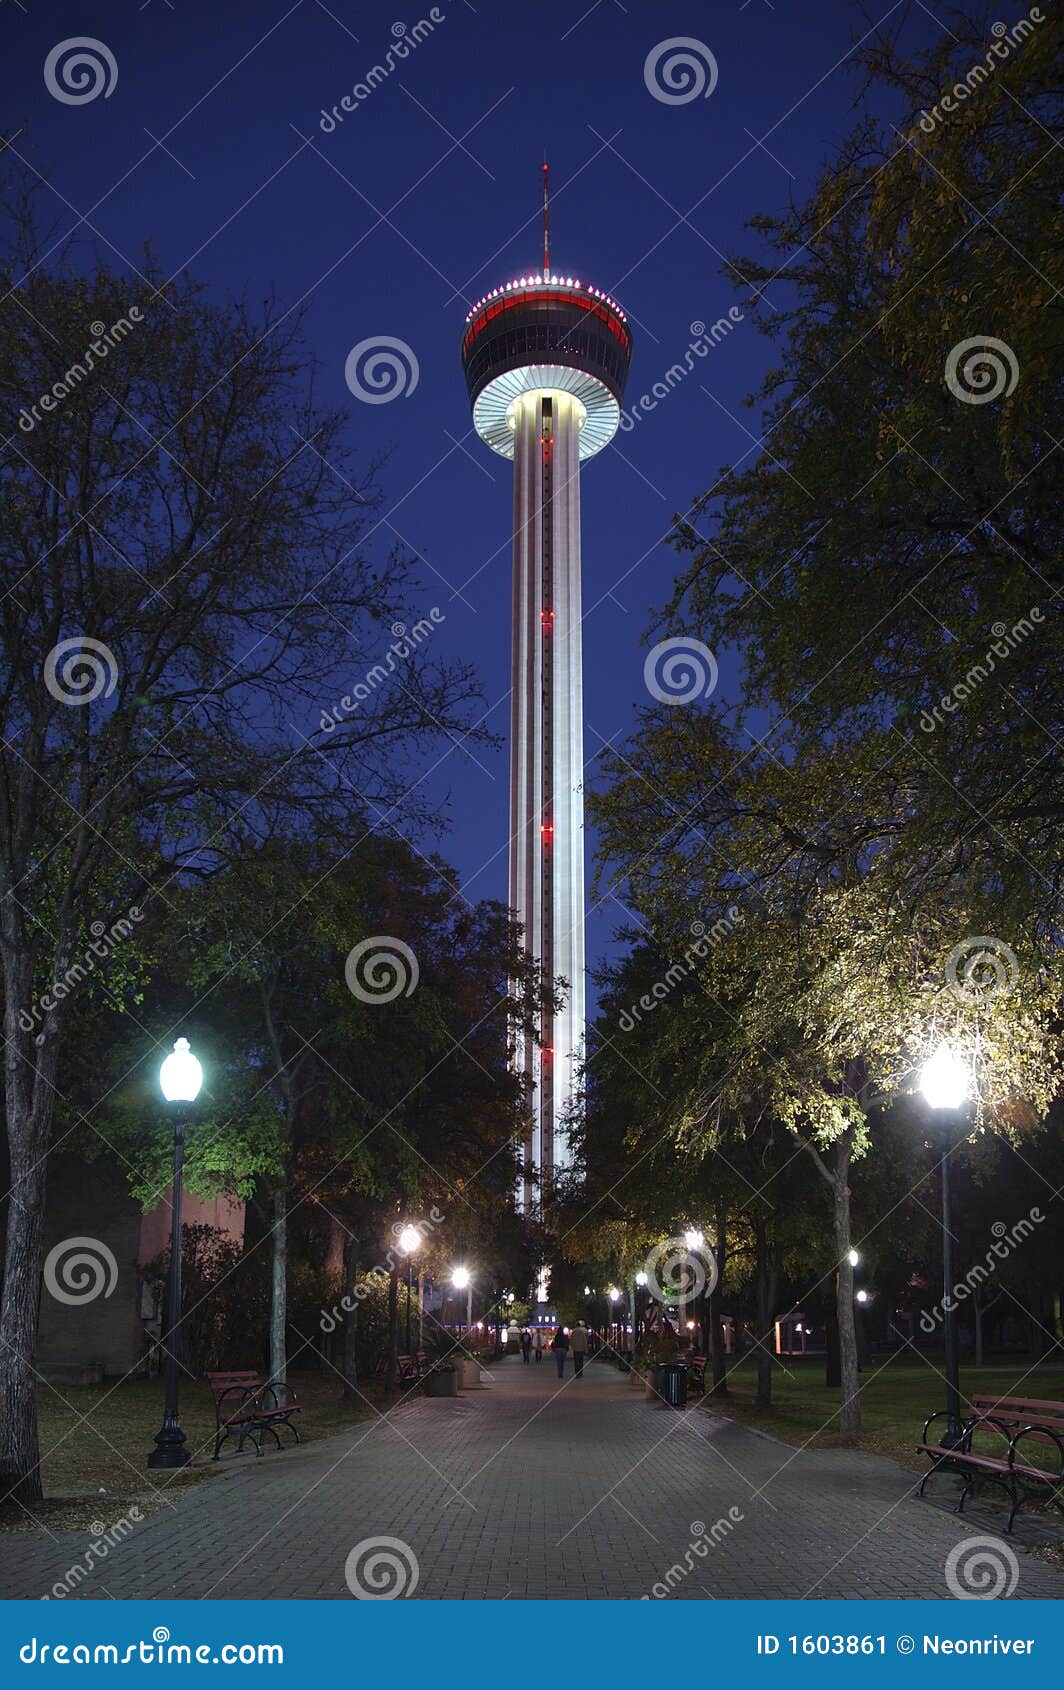 America lights night tower. America antonio hemisfair night photo plaza san texas tower